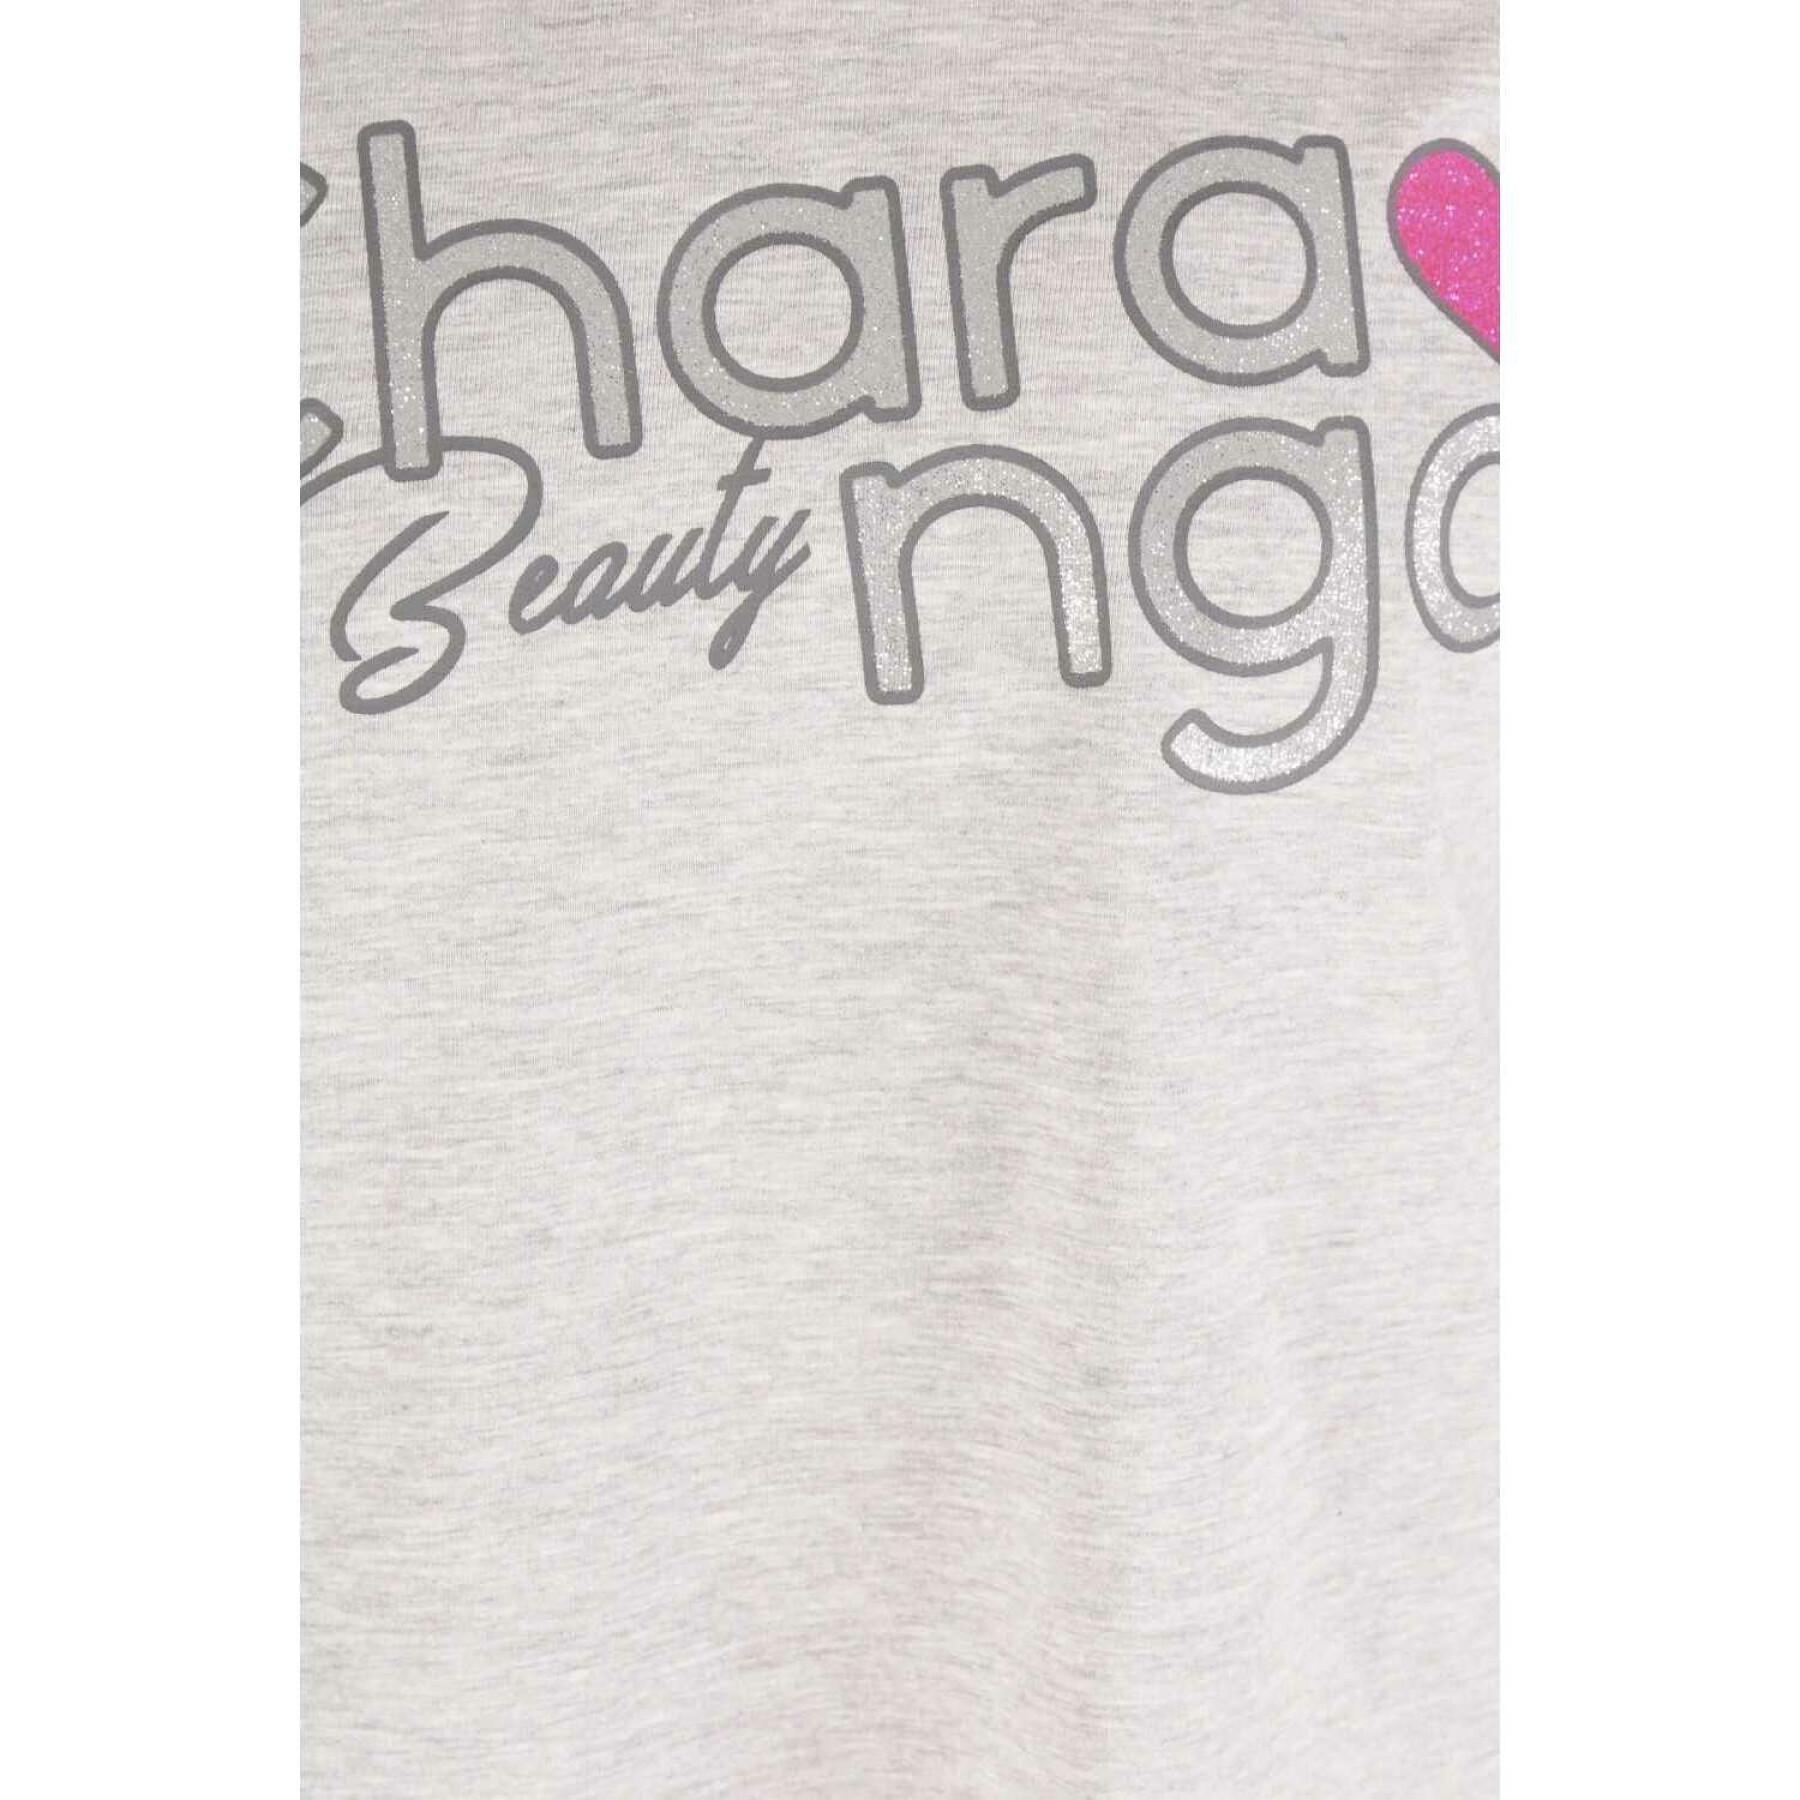 T-shirt de rapariga Charanga Confix